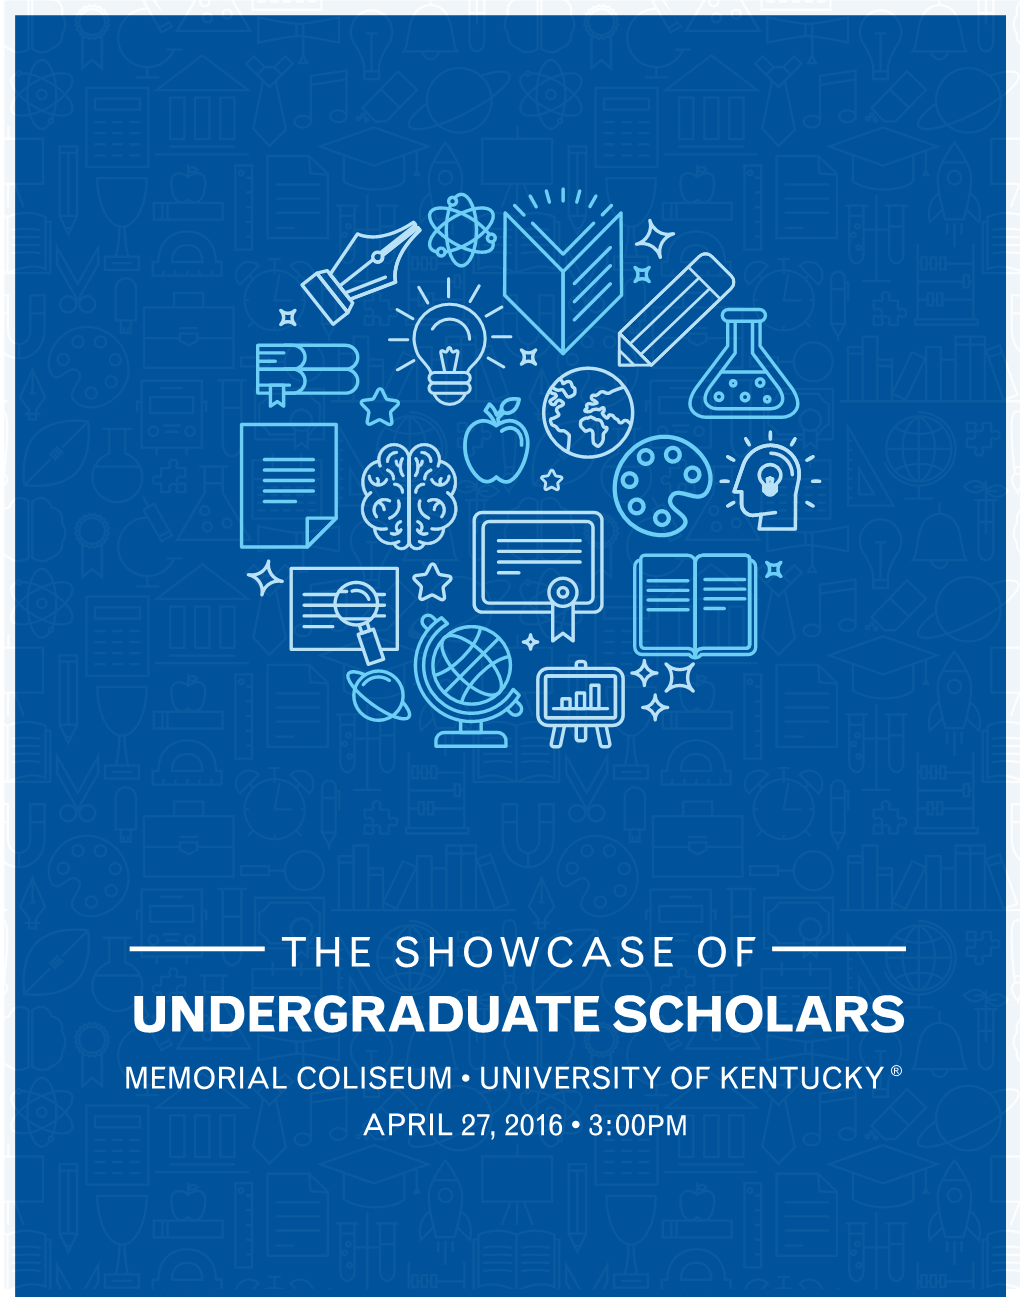 Tenth Annual Showcase of Undergraduate Scholars